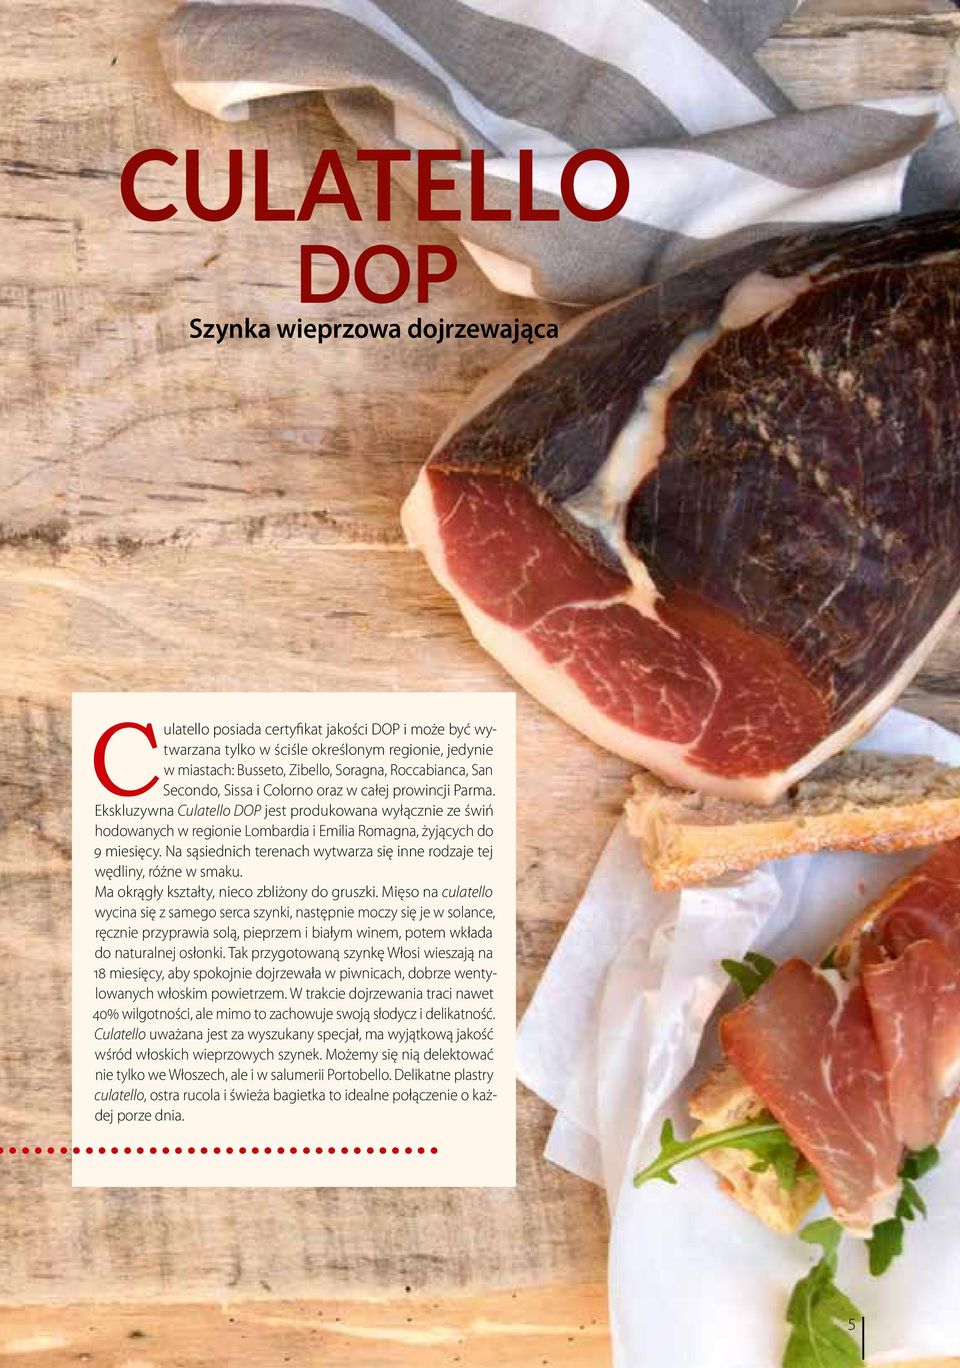 Ekskluzywna Culatello DOP jest produkowana wyłącznie ze świń hodowanych w regionie Lombardia i Emilia Romagna, żyjących do 9 miesięcy.